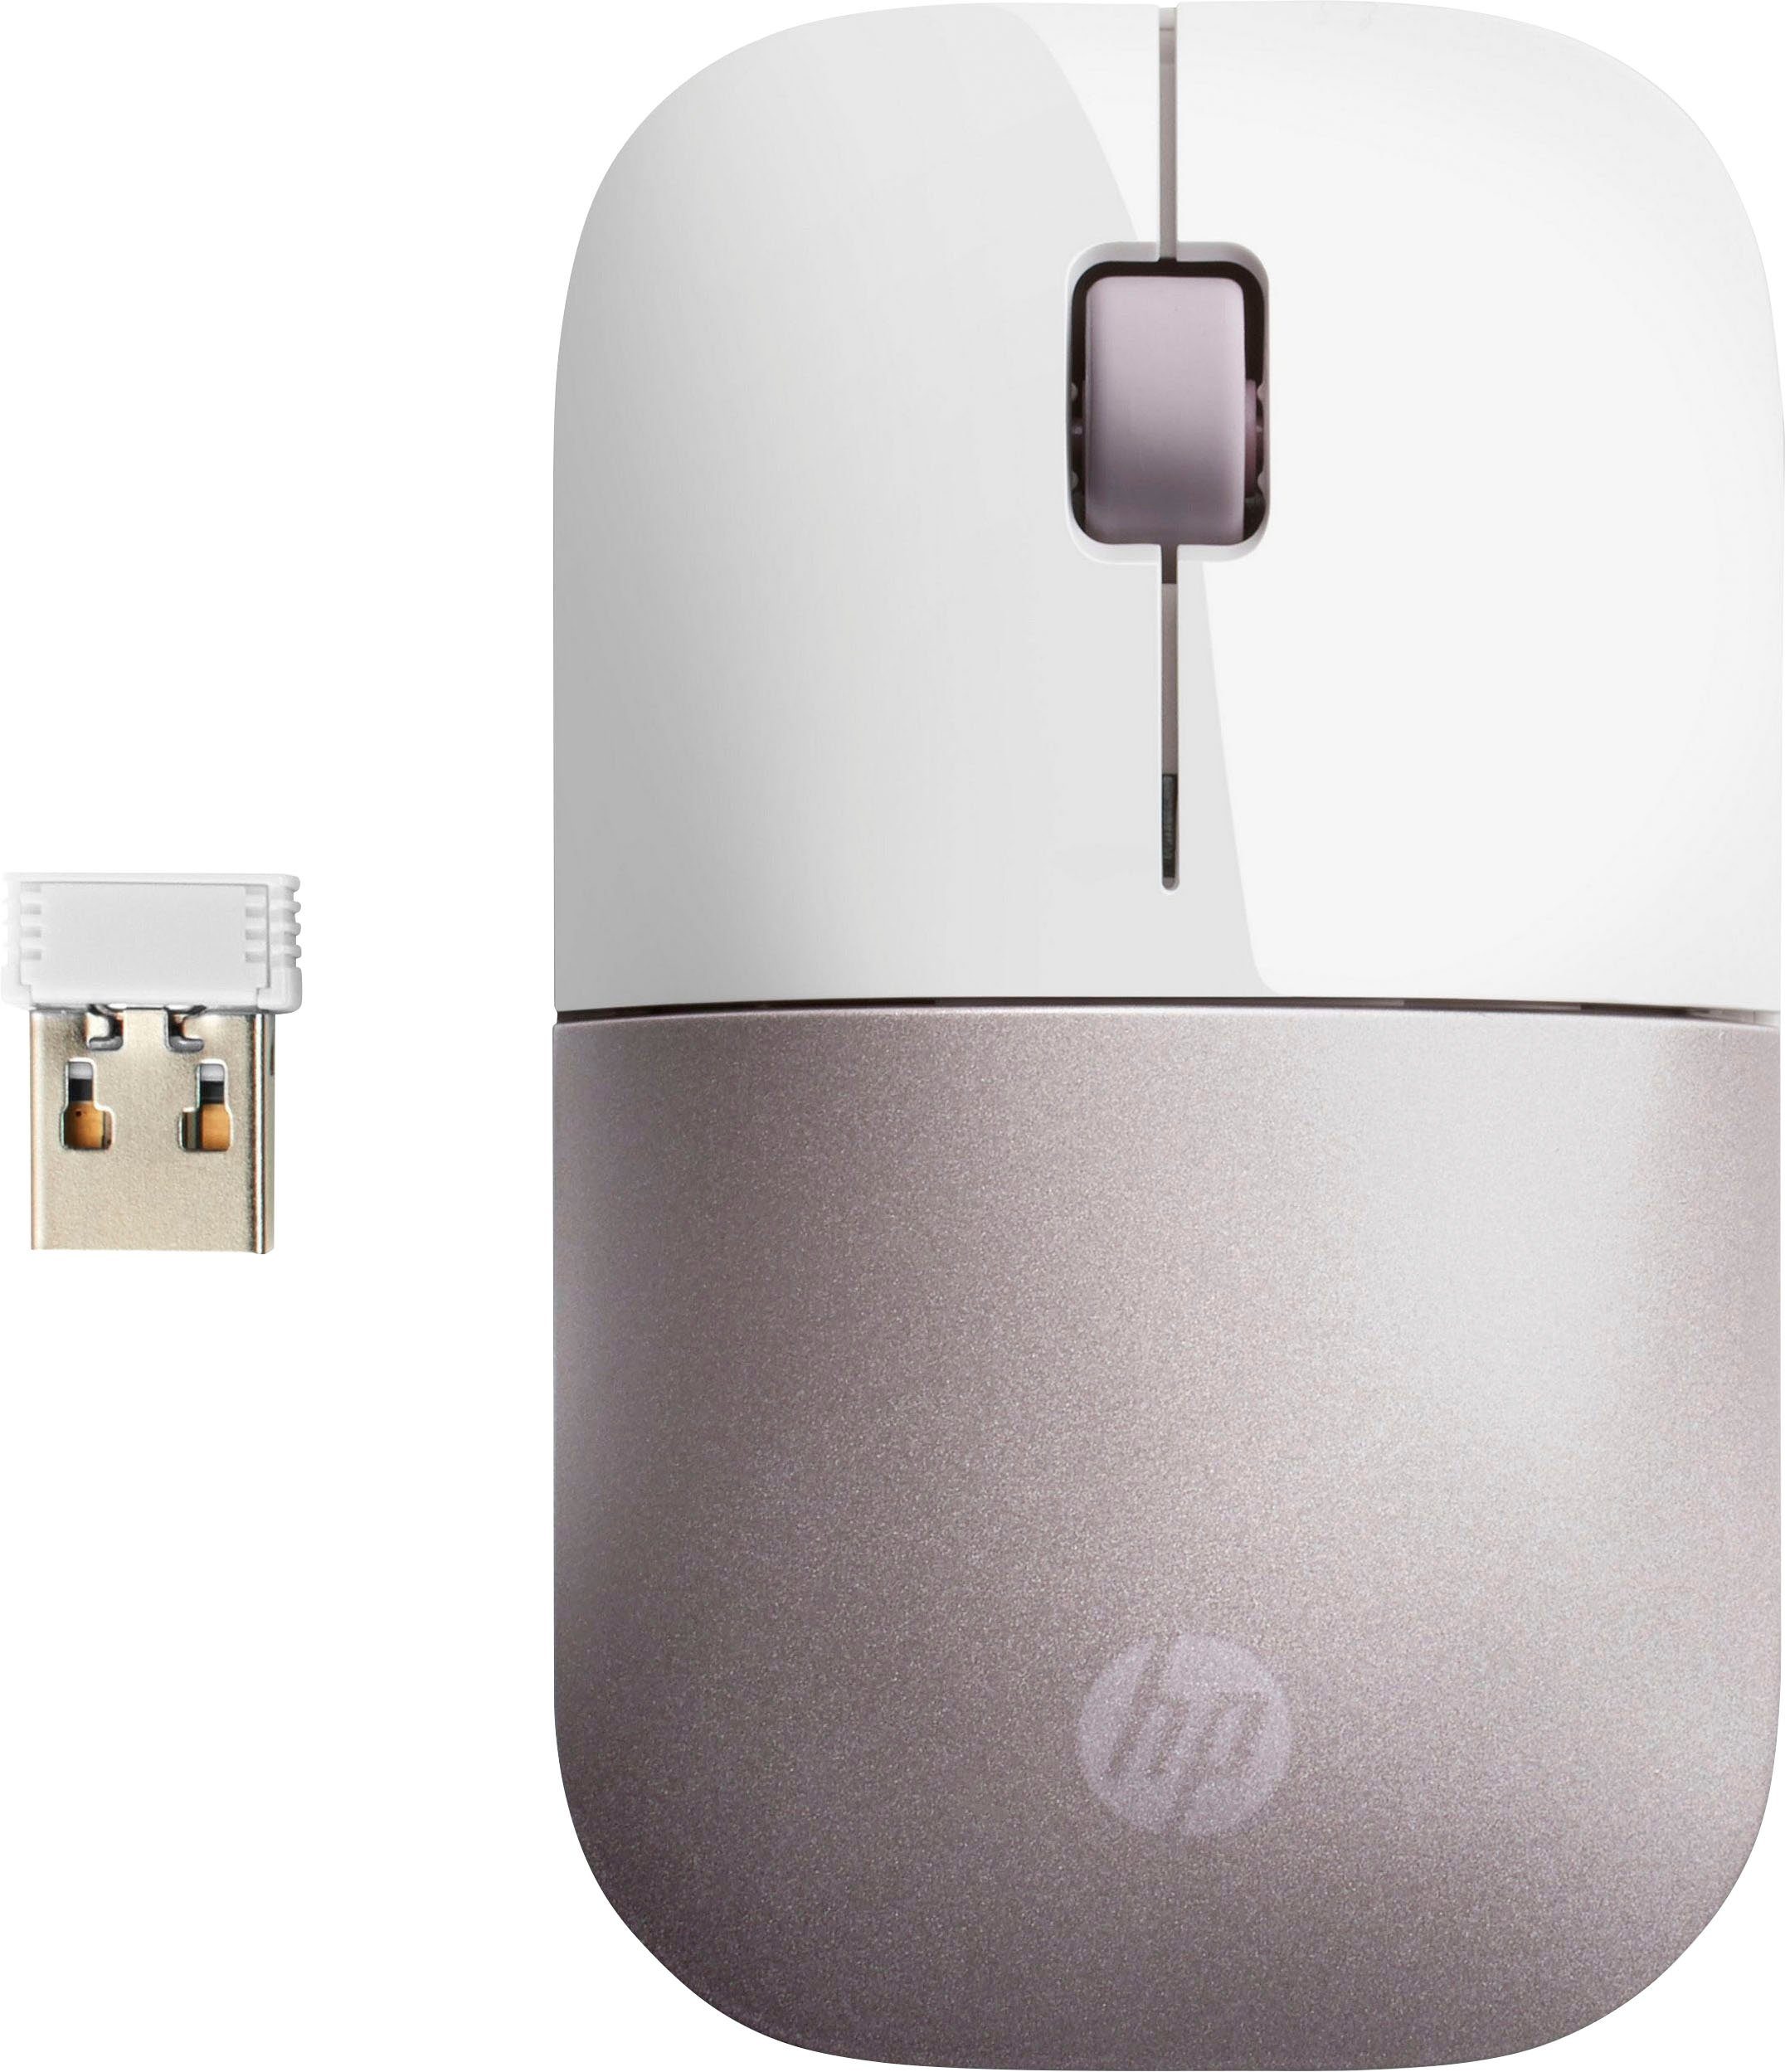 HP Z3700 Maus weiß/rosa | Funkmäuse